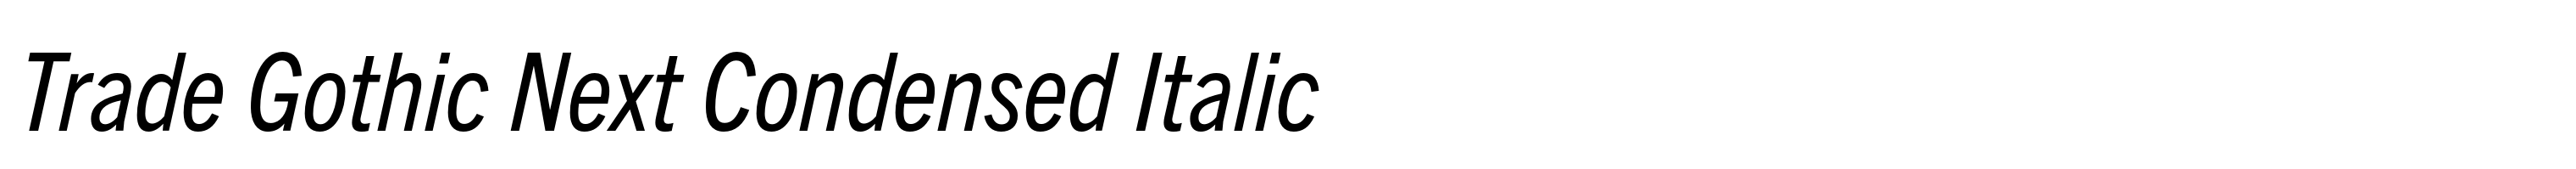 Trade Gothic Next Condensed Italic